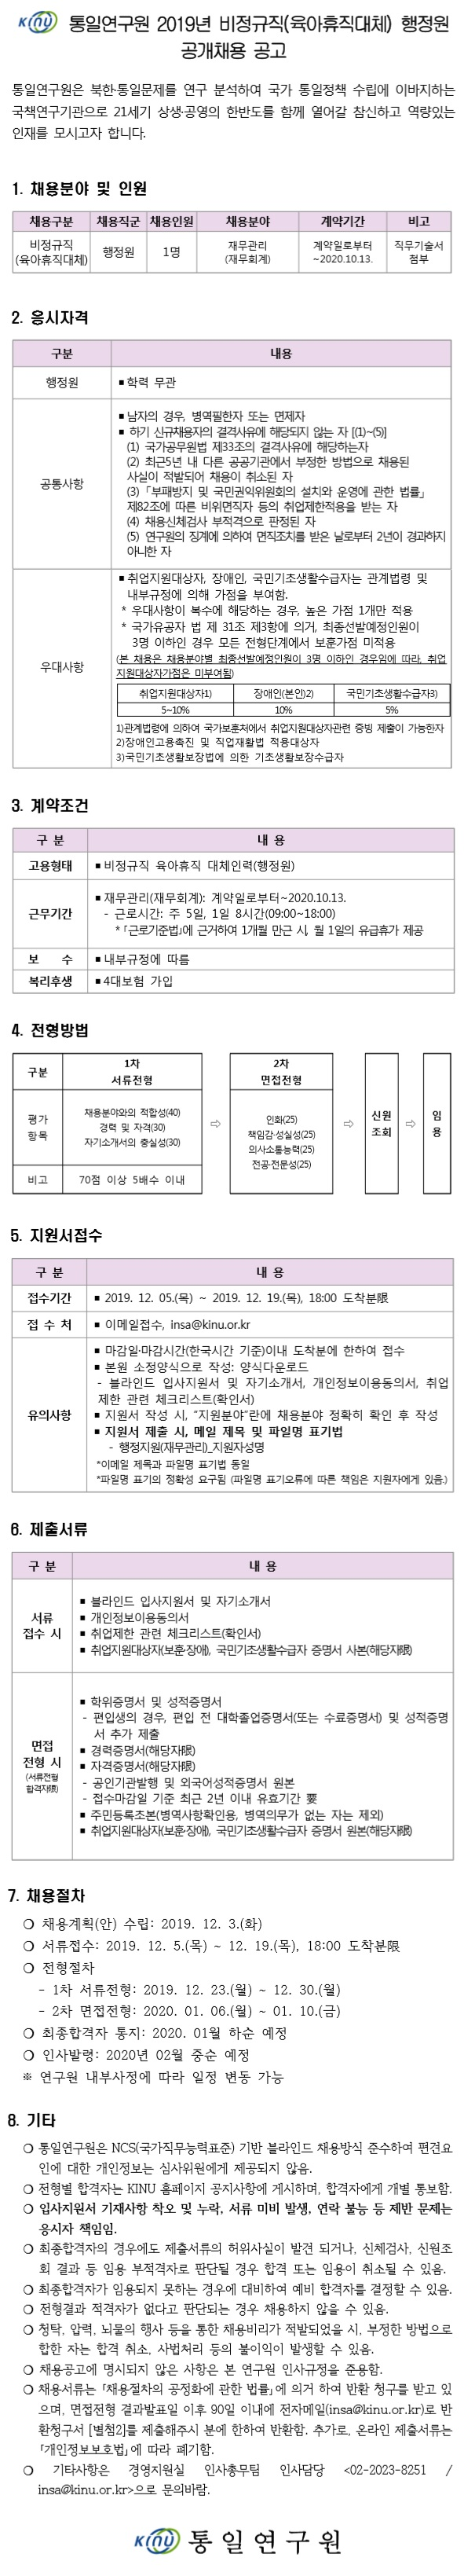 [채용][통일연구원] 2019년 비정규직(육아휴직대체) 행정원 공개채용 공고